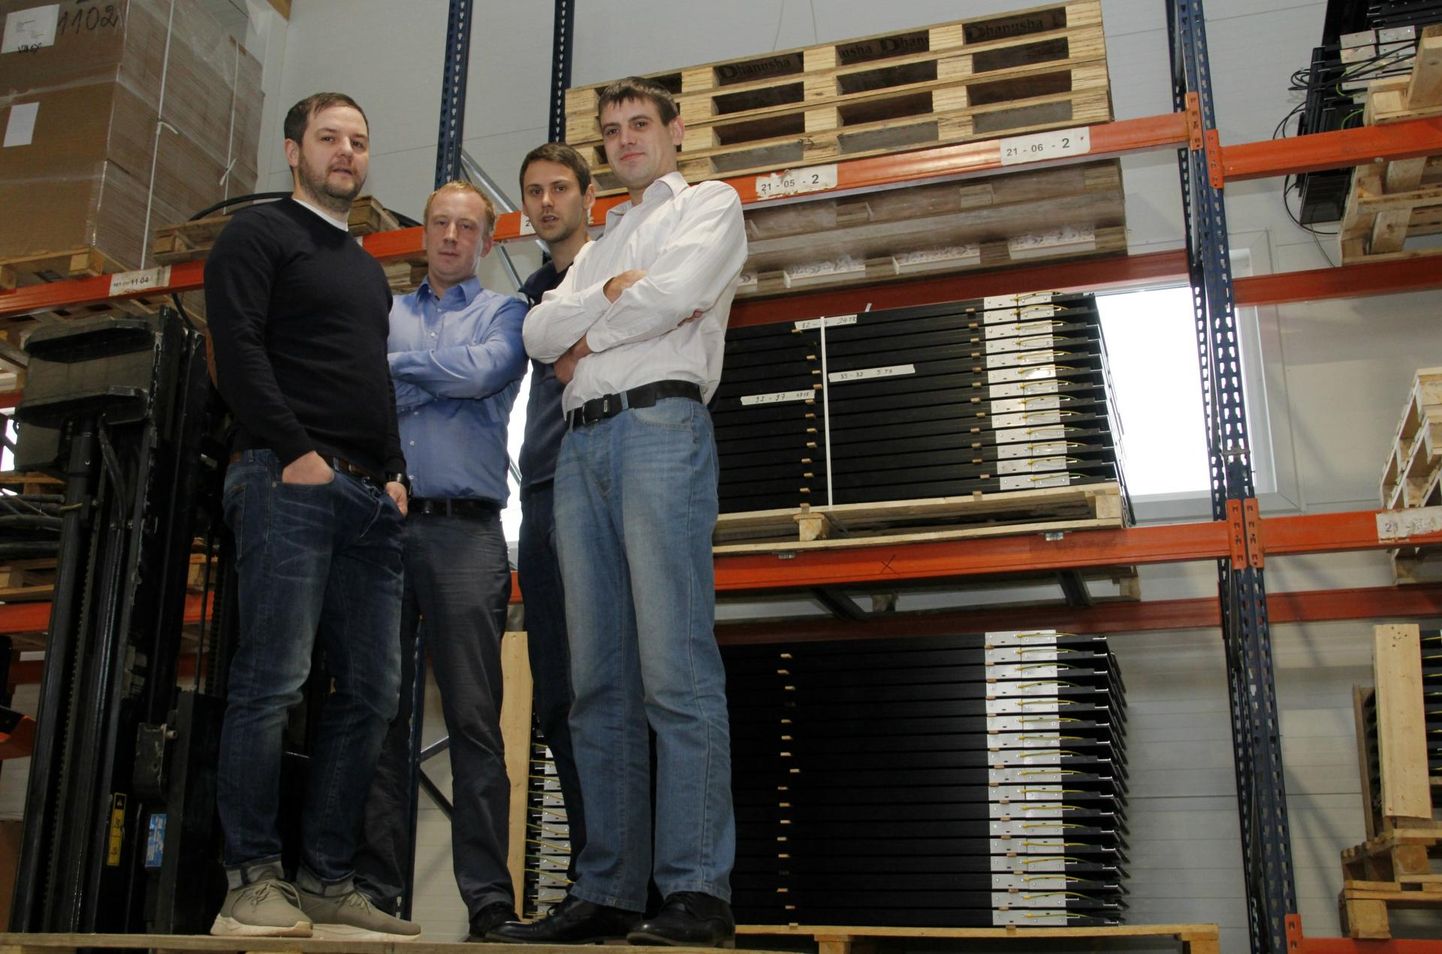 Solarstone’i meeskond (vasakult) Silver Aednik, Mattis Jürimäe, Mait Kukk ja Marko Moks usuvad, et oluline on nii tehniline võimekus kui kiirus.